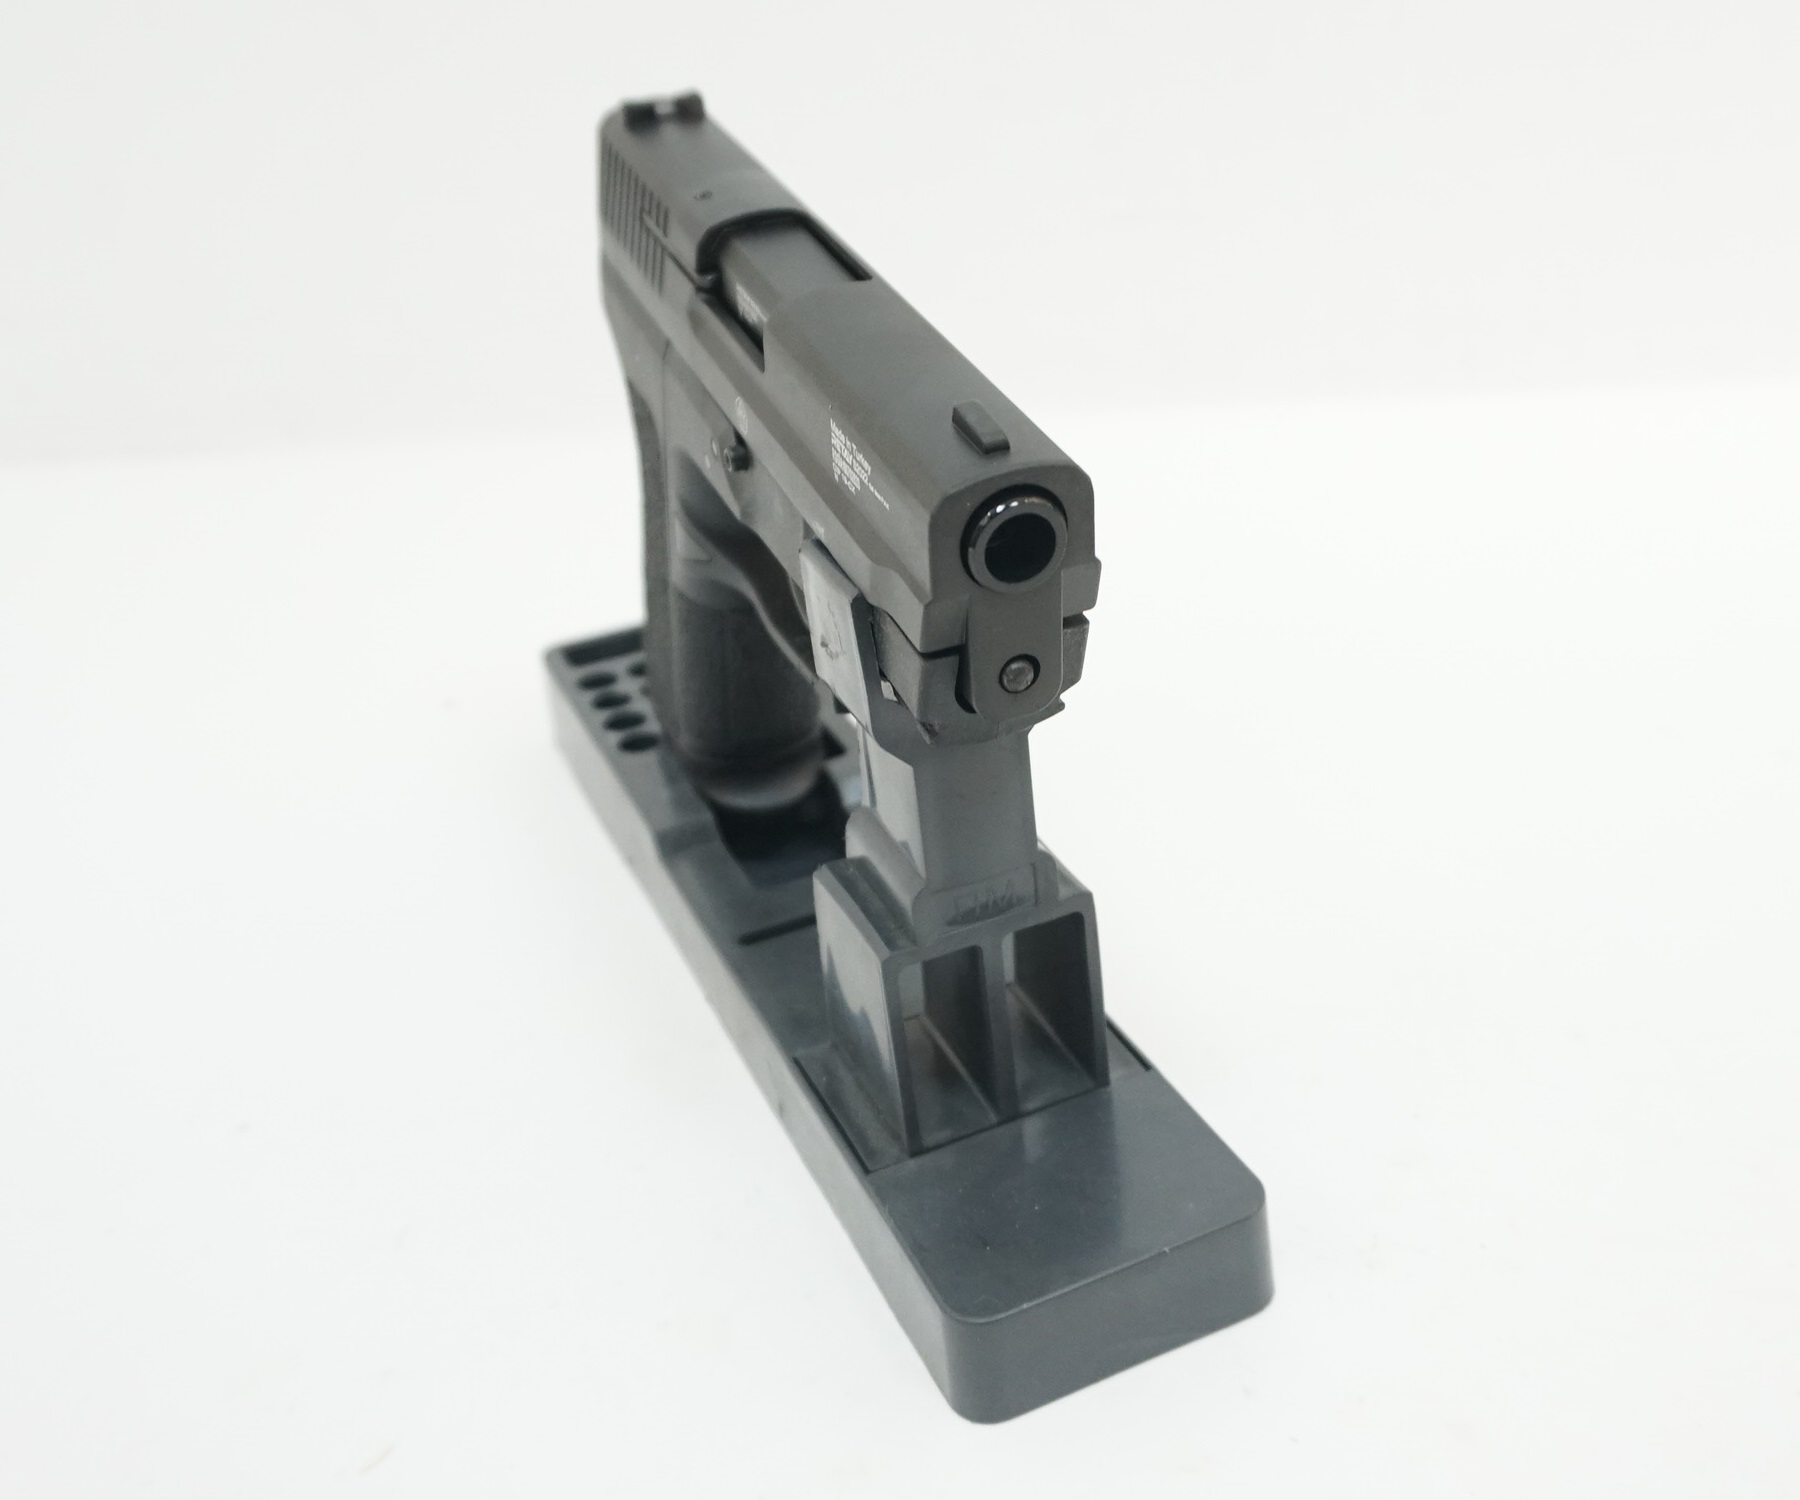 Пистолет охолощенный Retay S2022 (Sig Sauer), к.9мм (никель)